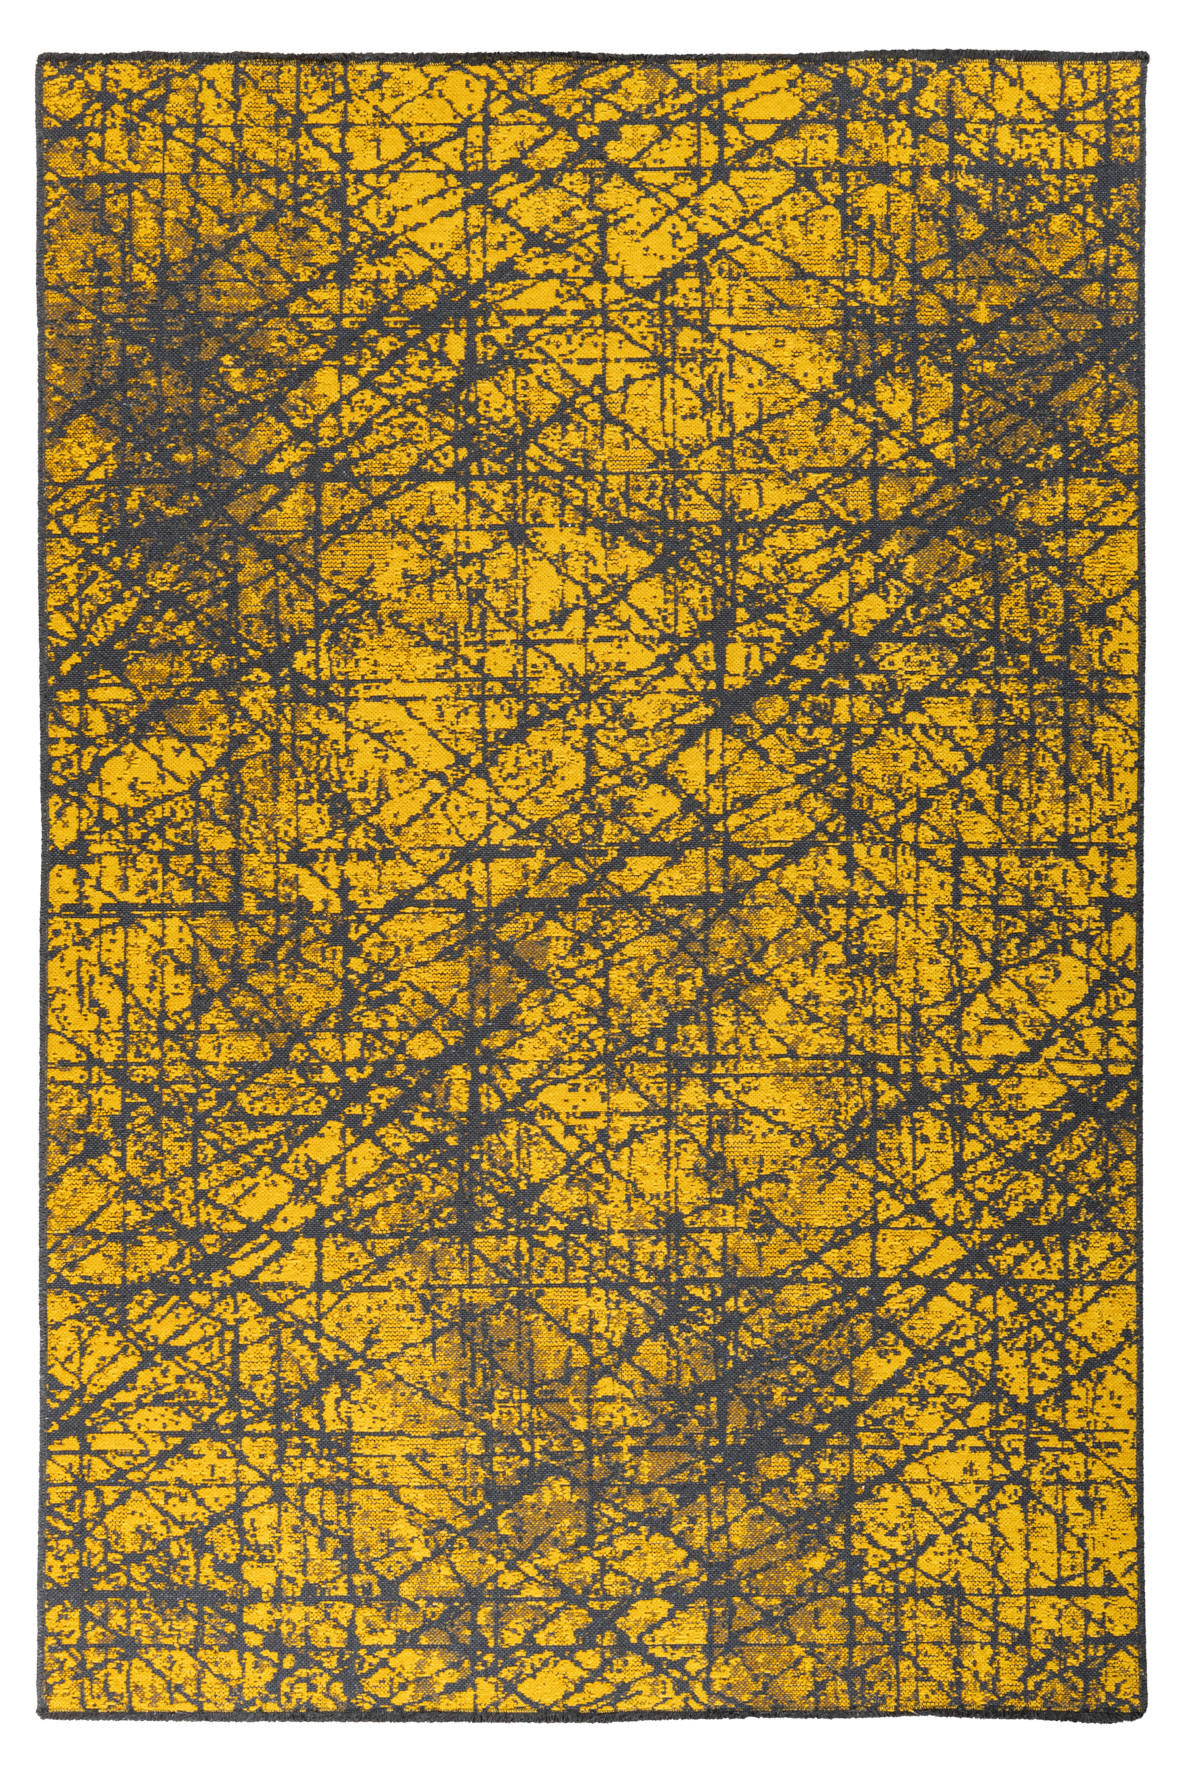 In- und Outdoorteppich   Gelb   - Gelb, Design, Textil (80/150cm) - Novel